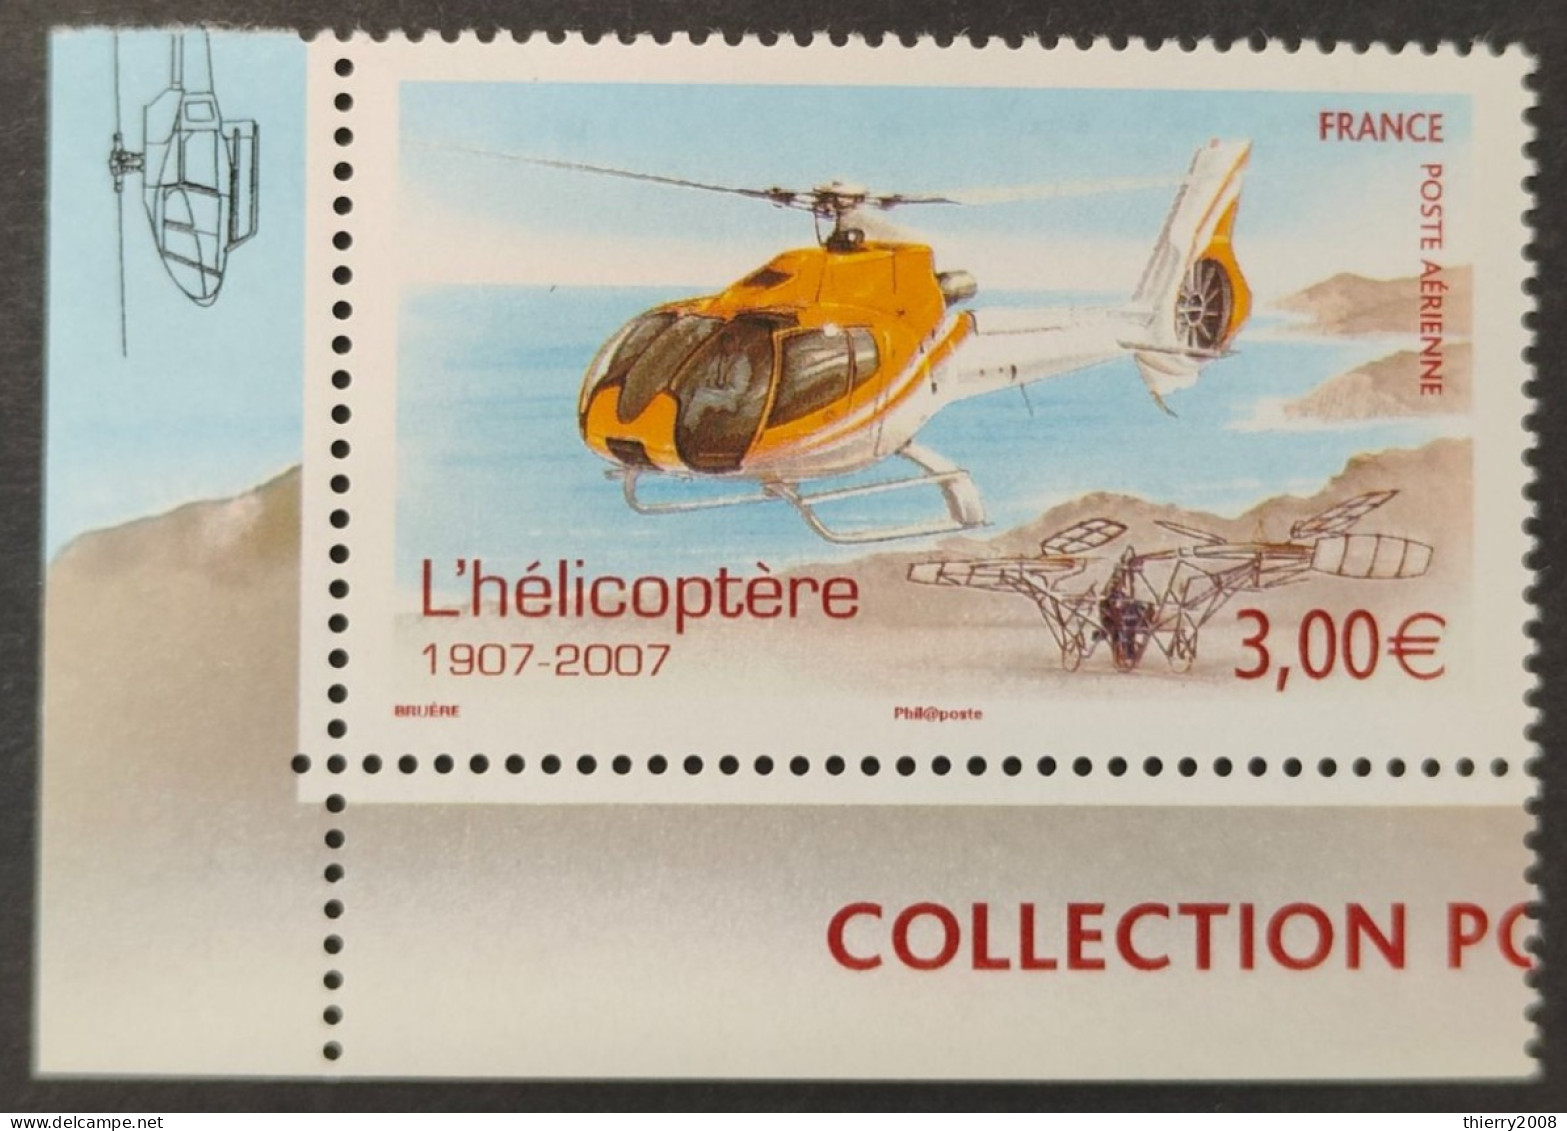 Poste Aérienne N° 70a  Neuf ** Gomme D'Origine Avec Bord De Feuille  TB - 1960-.... Postfris